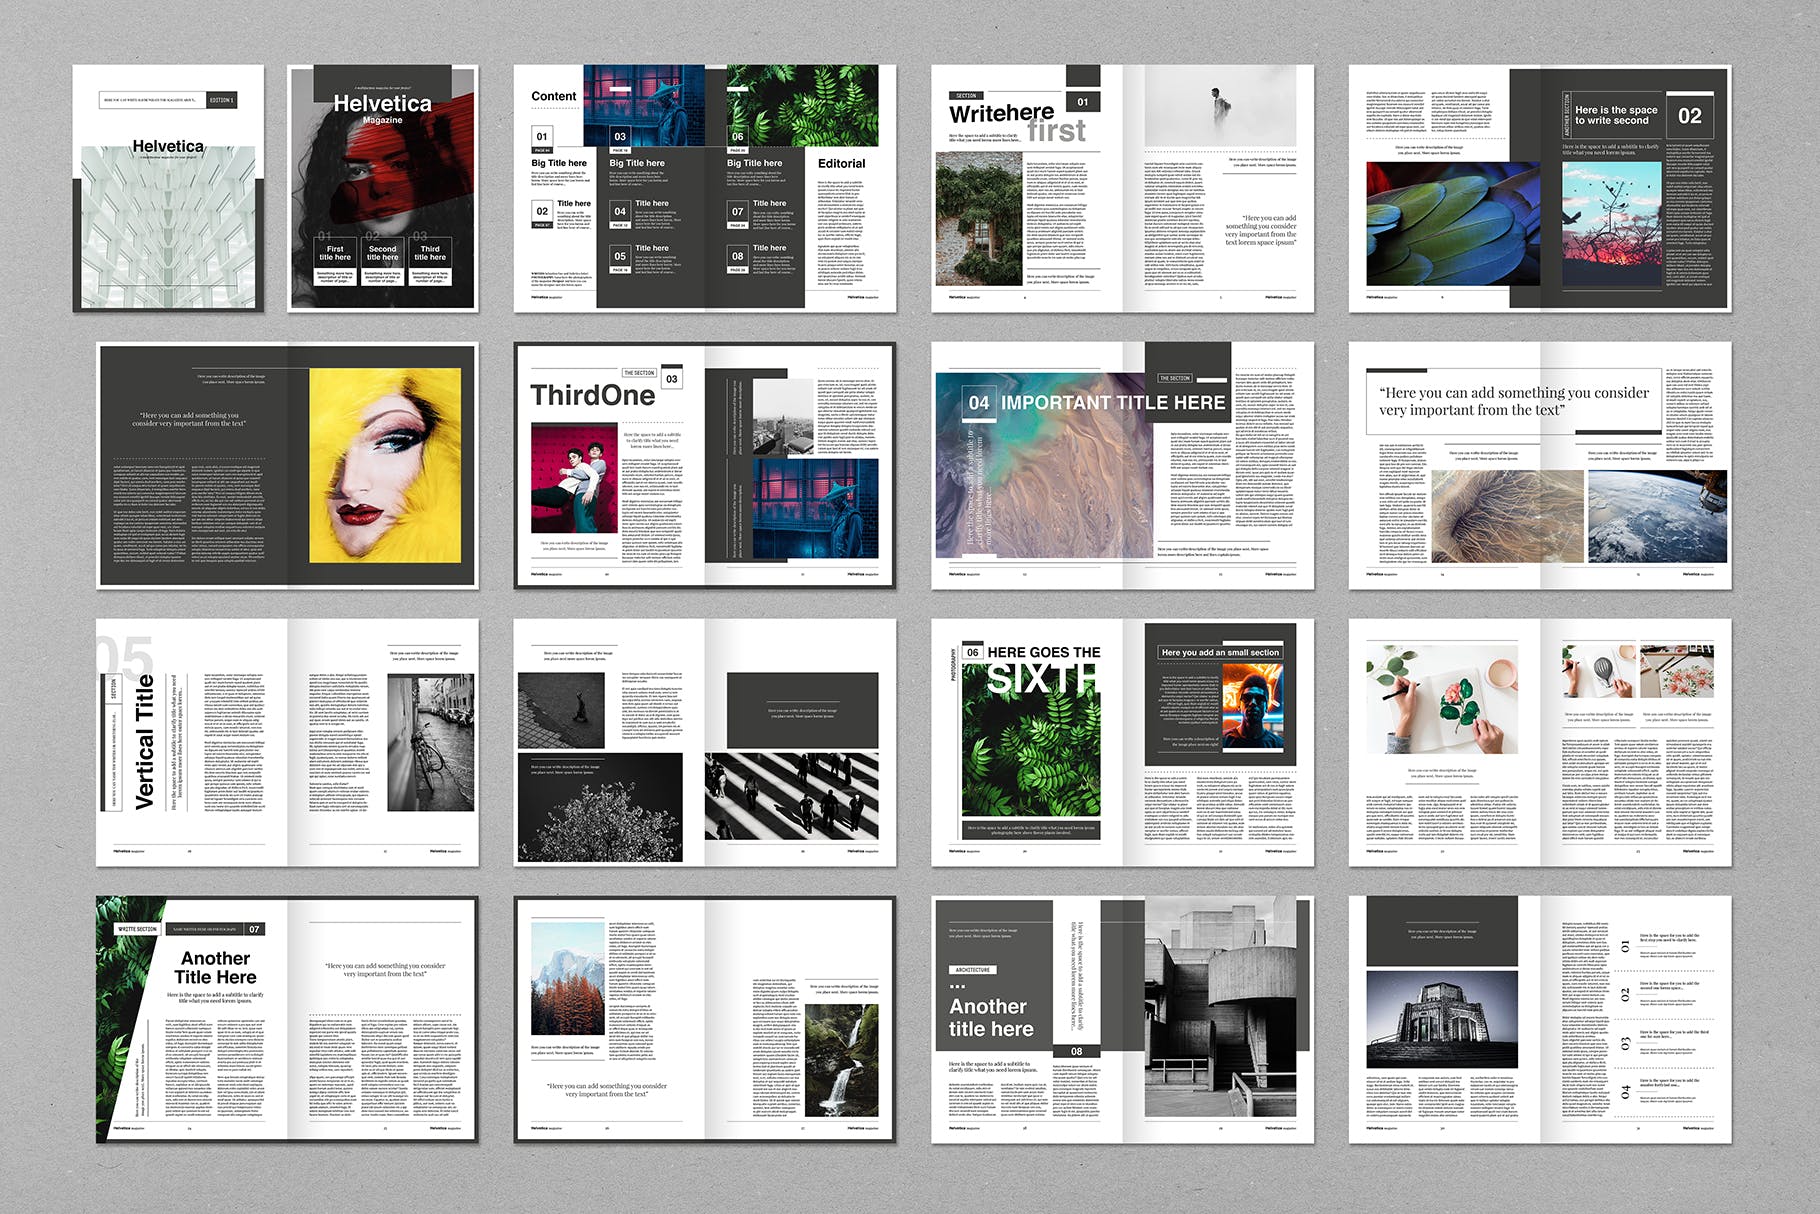 时尚行业产品评测杂志Indesign模板下载 Helvetica Magazine Indesign Template插图(13)